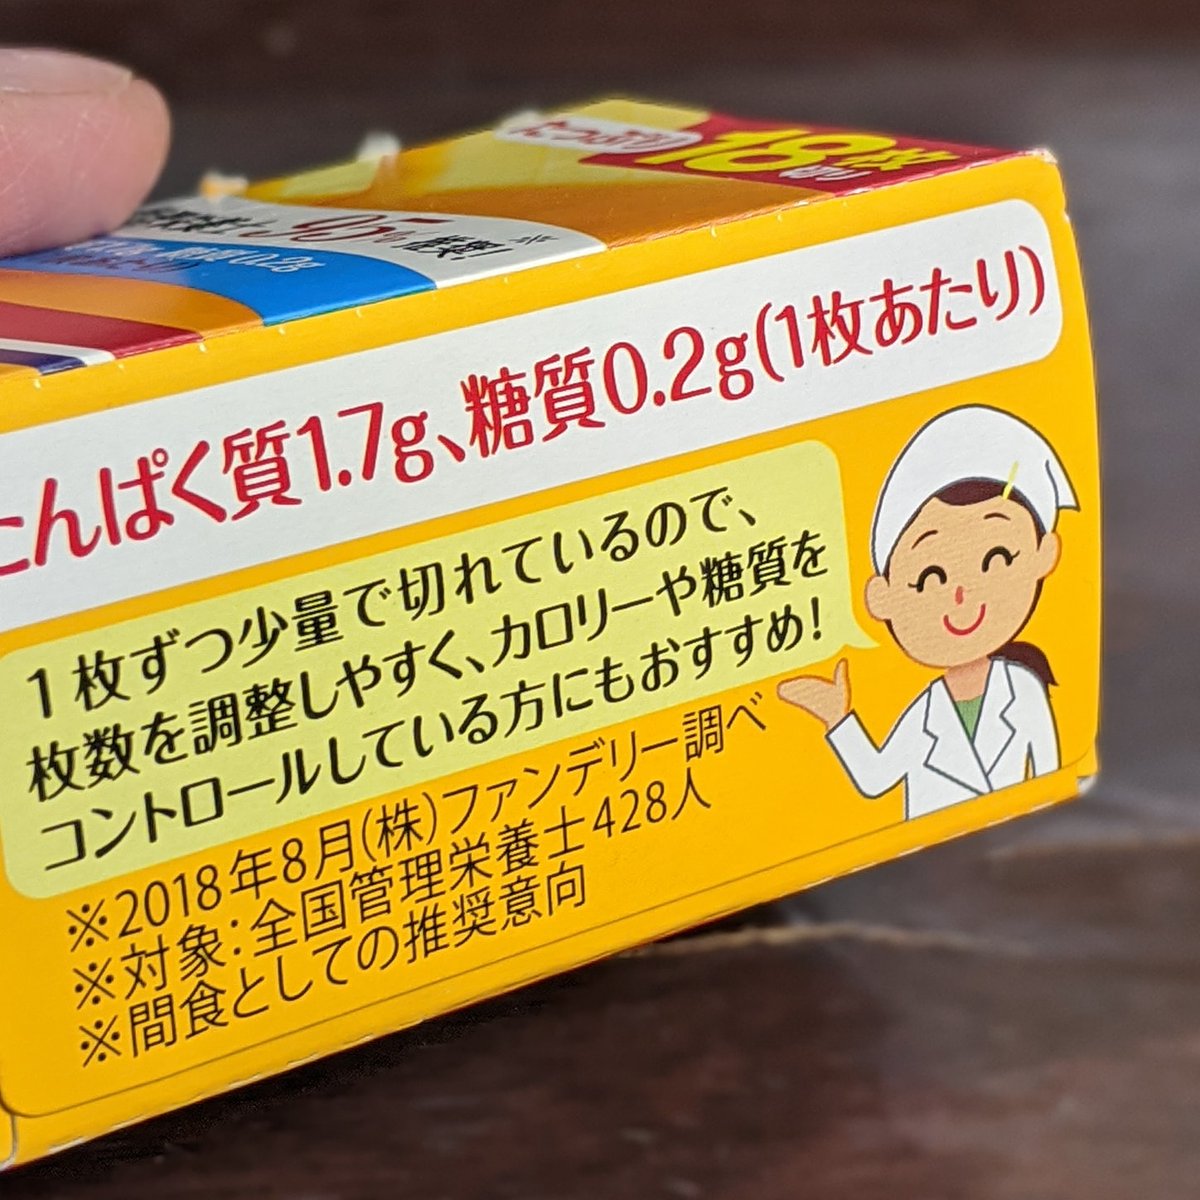 Natsumi Takagi 高木 夏美 در توییتر いらすとやさんを使いたくないんだけど いらすとや さん風なテイストで と発注した結果 ジェネリックいらすとやさんみたいなイラストになってしまった クラフト切れてるチーズ のパッケージ